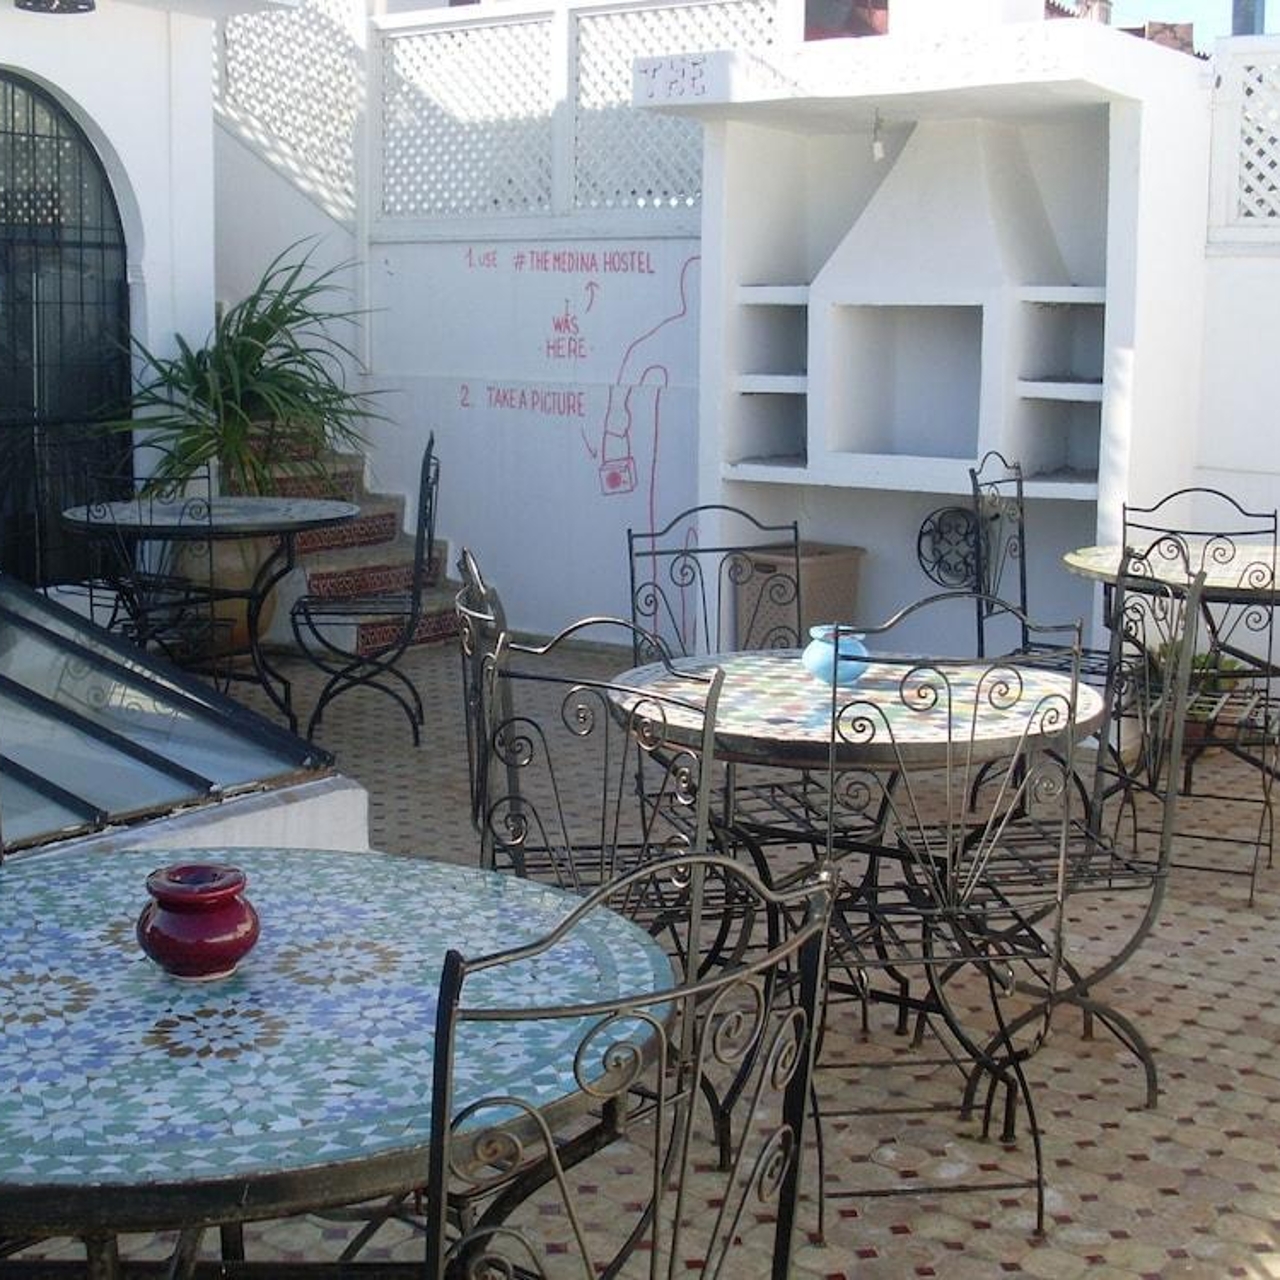 The Medina Hostel in Tangier (Tanger) - HRS